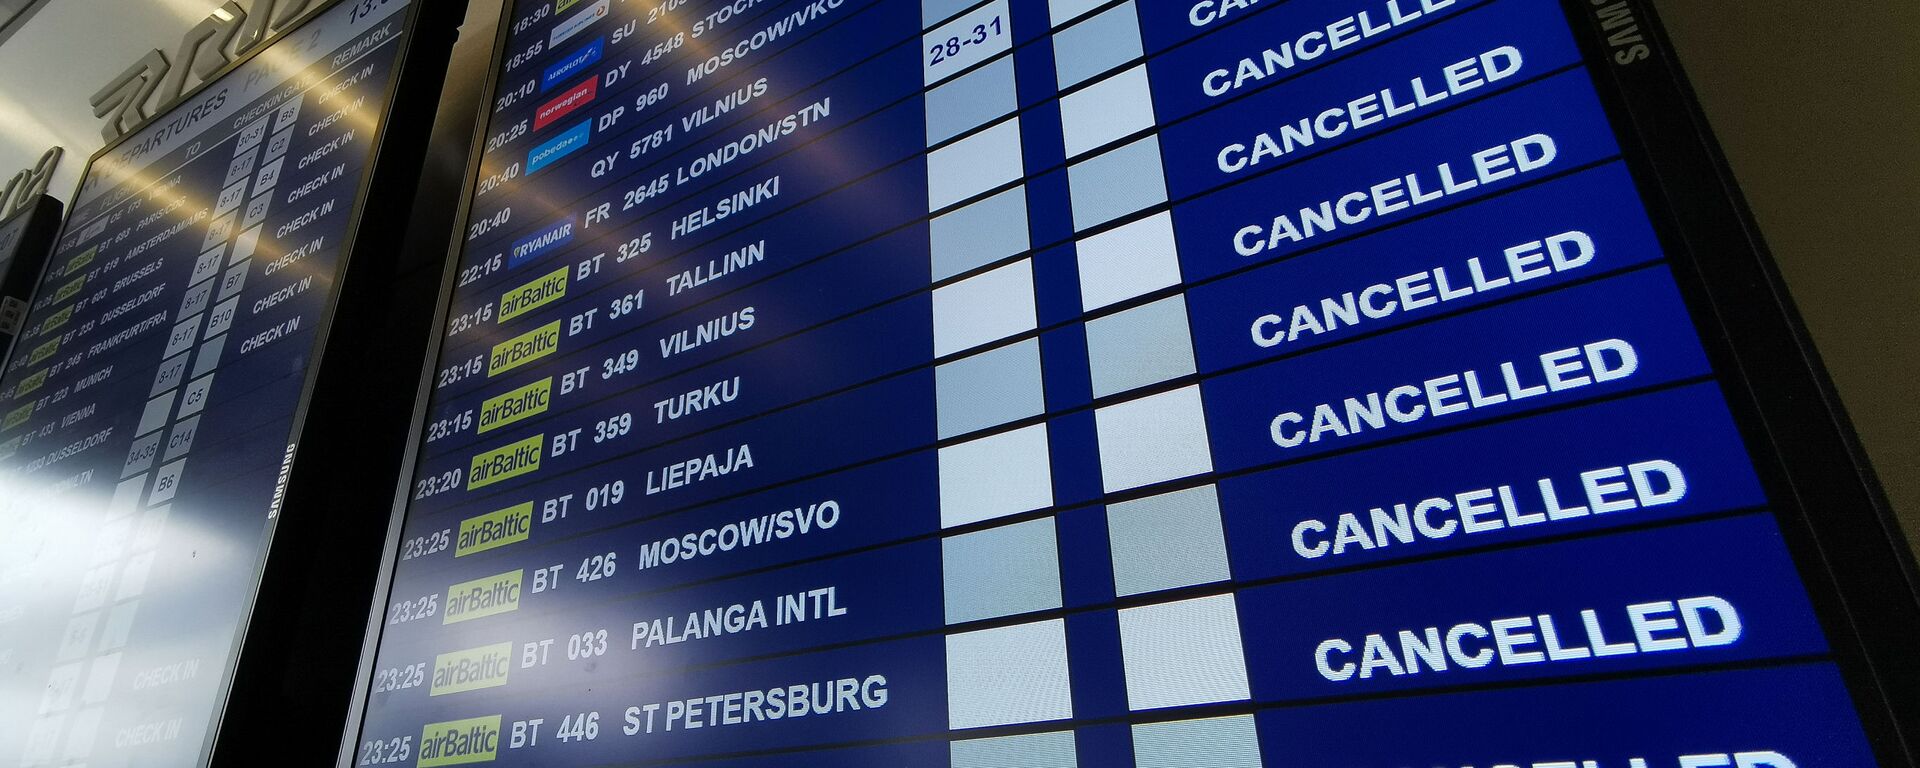 Табло вылета аэропорту Рига со списком отмененных рейсов авиакомпании airBaltic - Sputnik Латвия, 1920, 27.11.2020